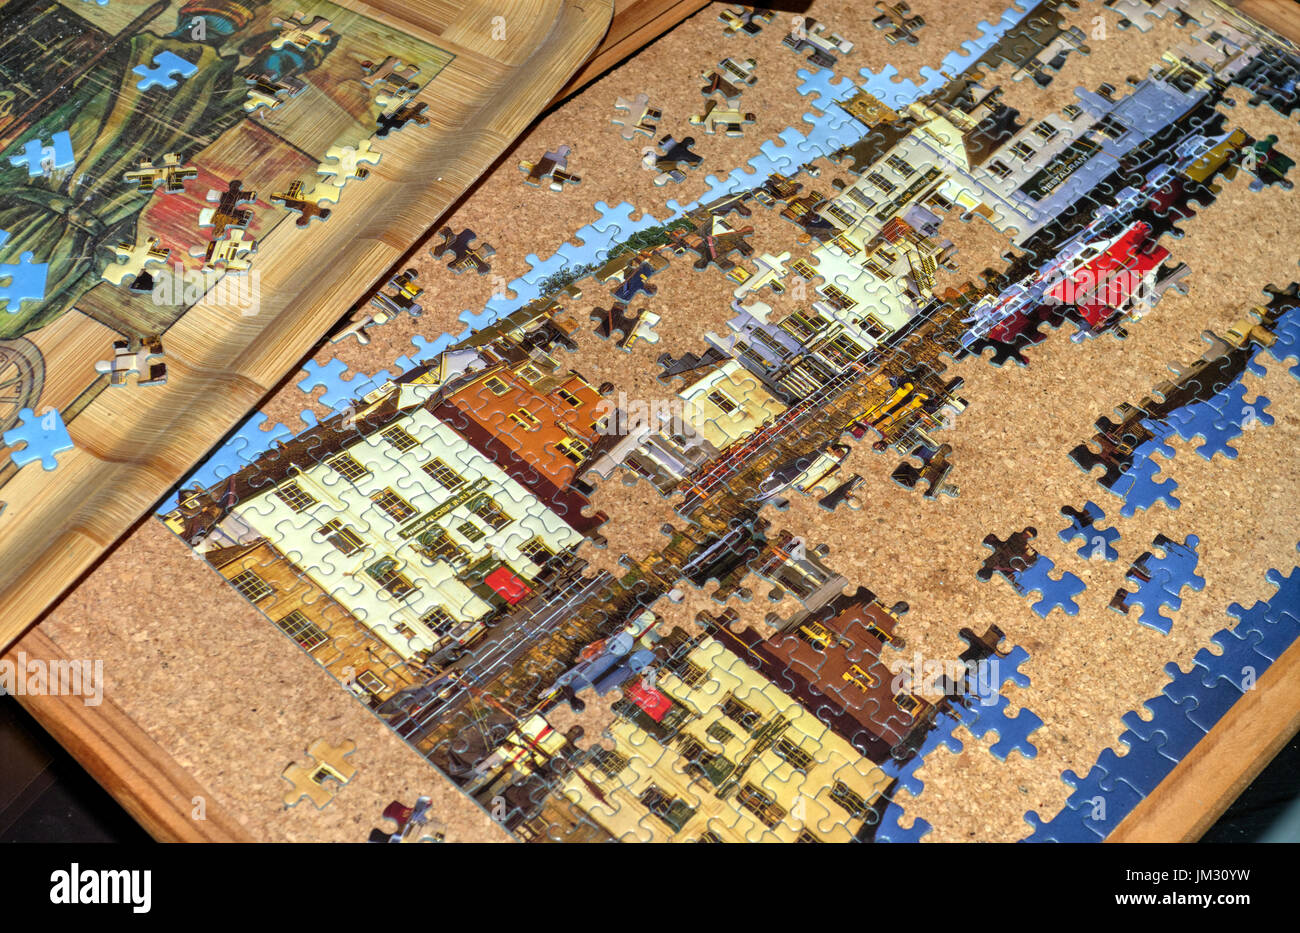 Teilweise abgeschlossen Puzzle mit einigen Stücken, die Verlegung in ein Fach warten auf Auswahl. Stockfoto